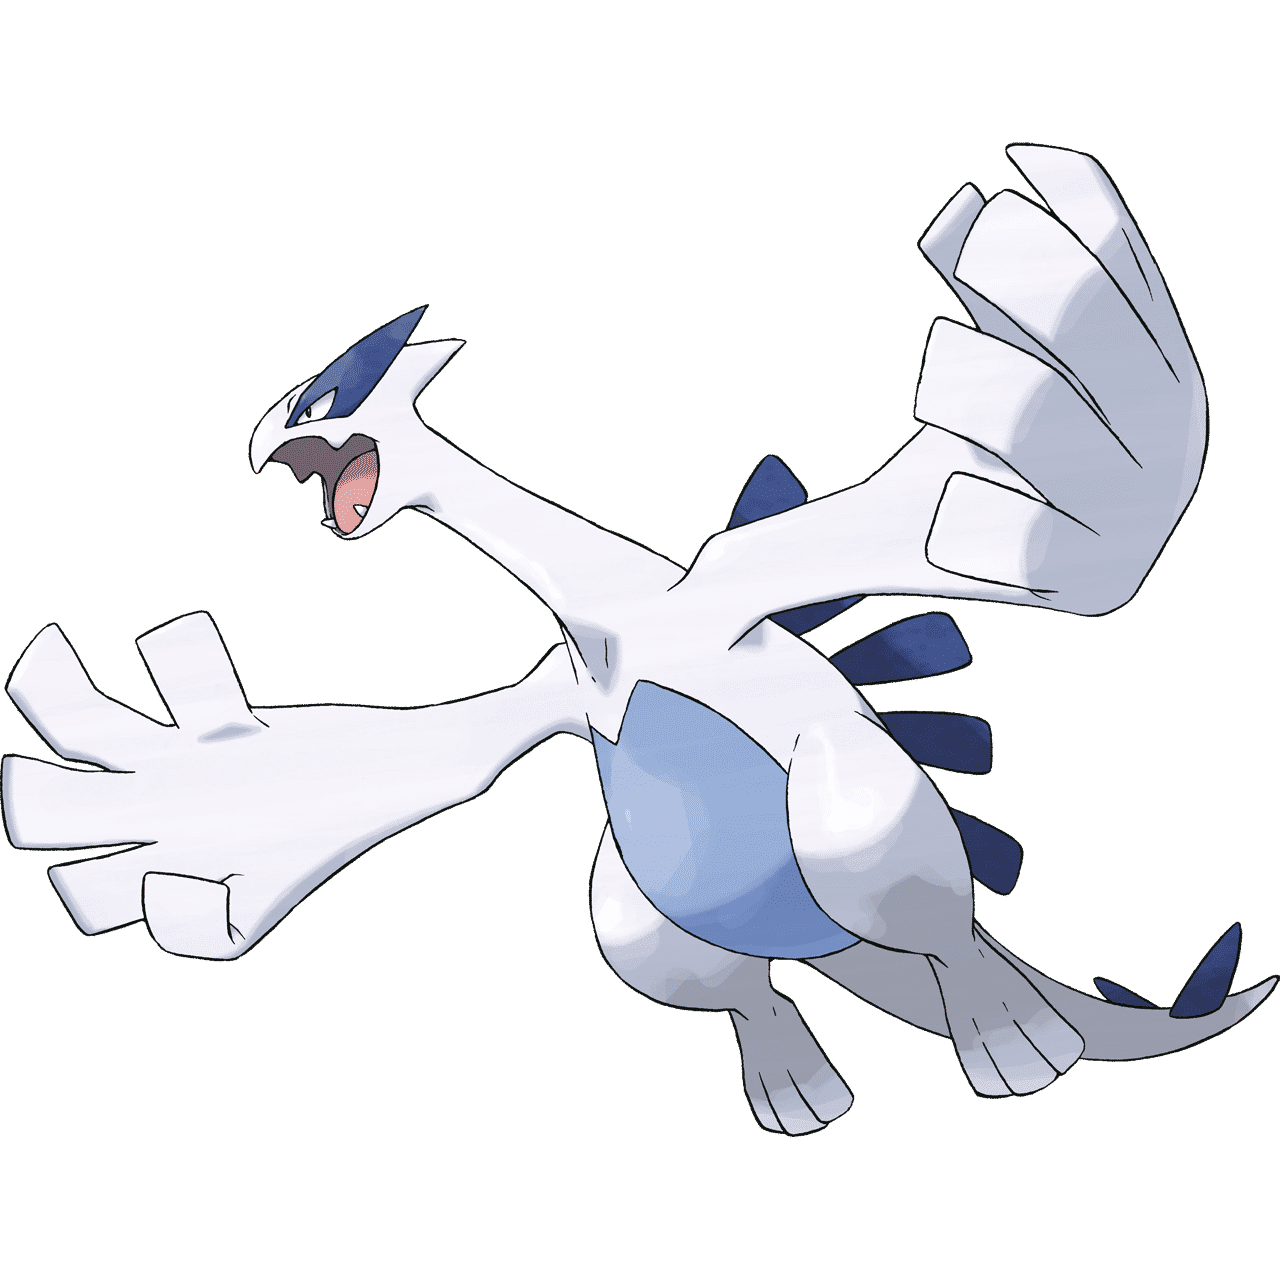 Pokémon Artwork Lugia